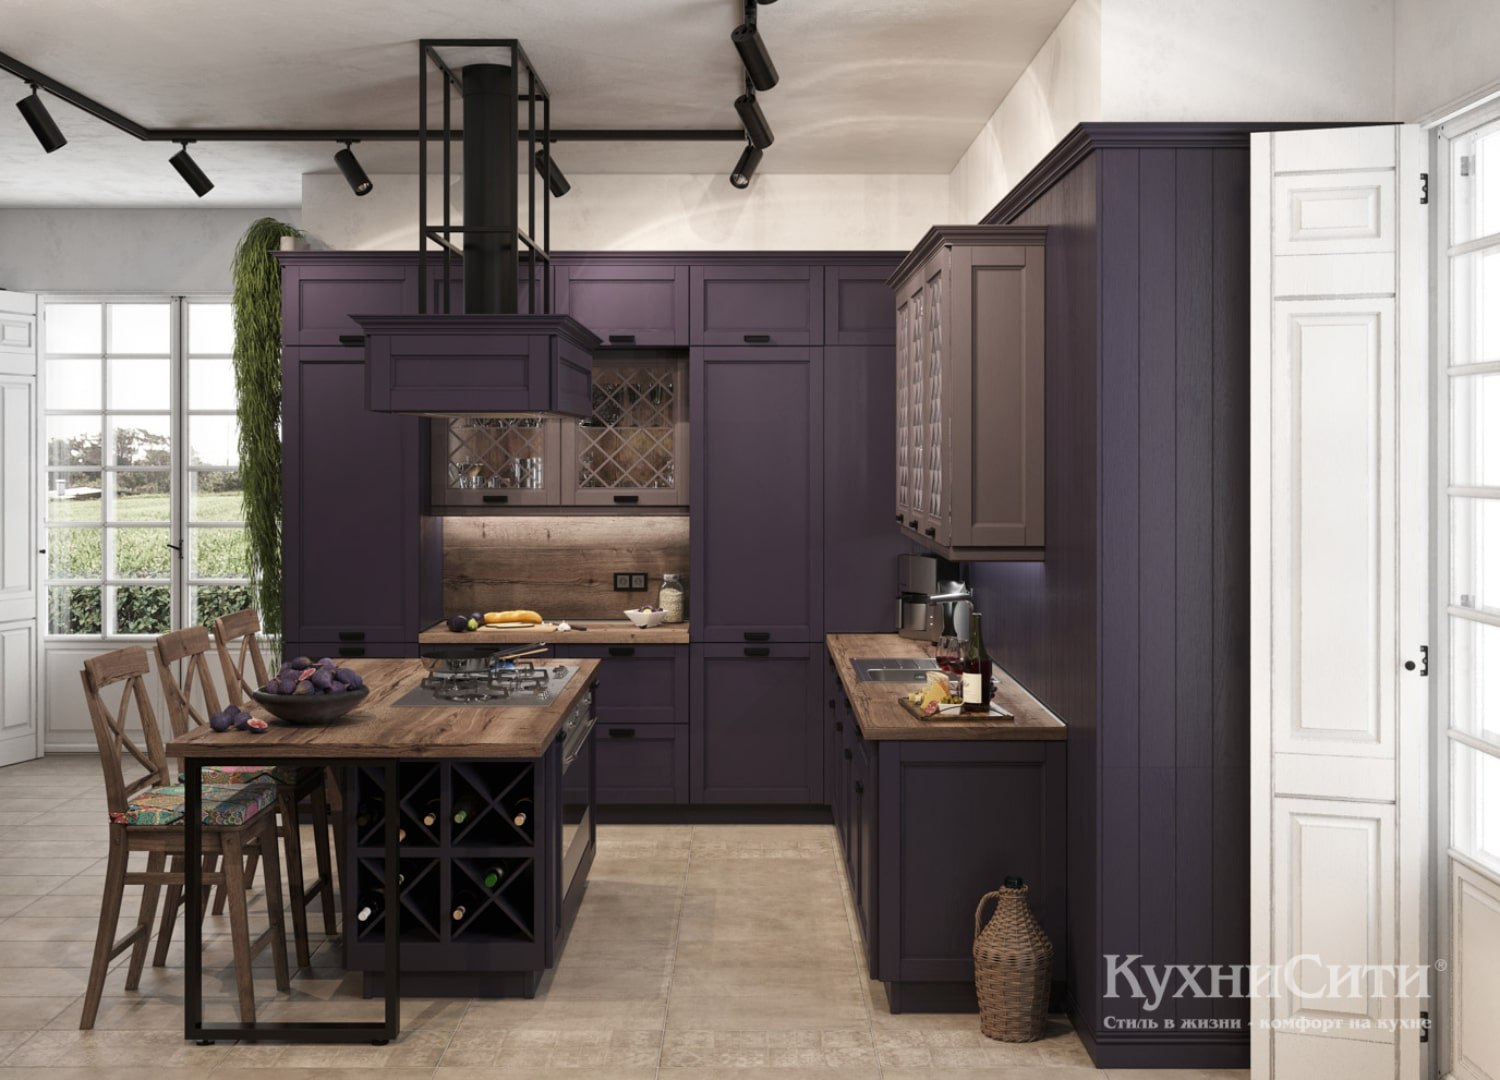 Кухня матовая фиолетовая со столовой зоной